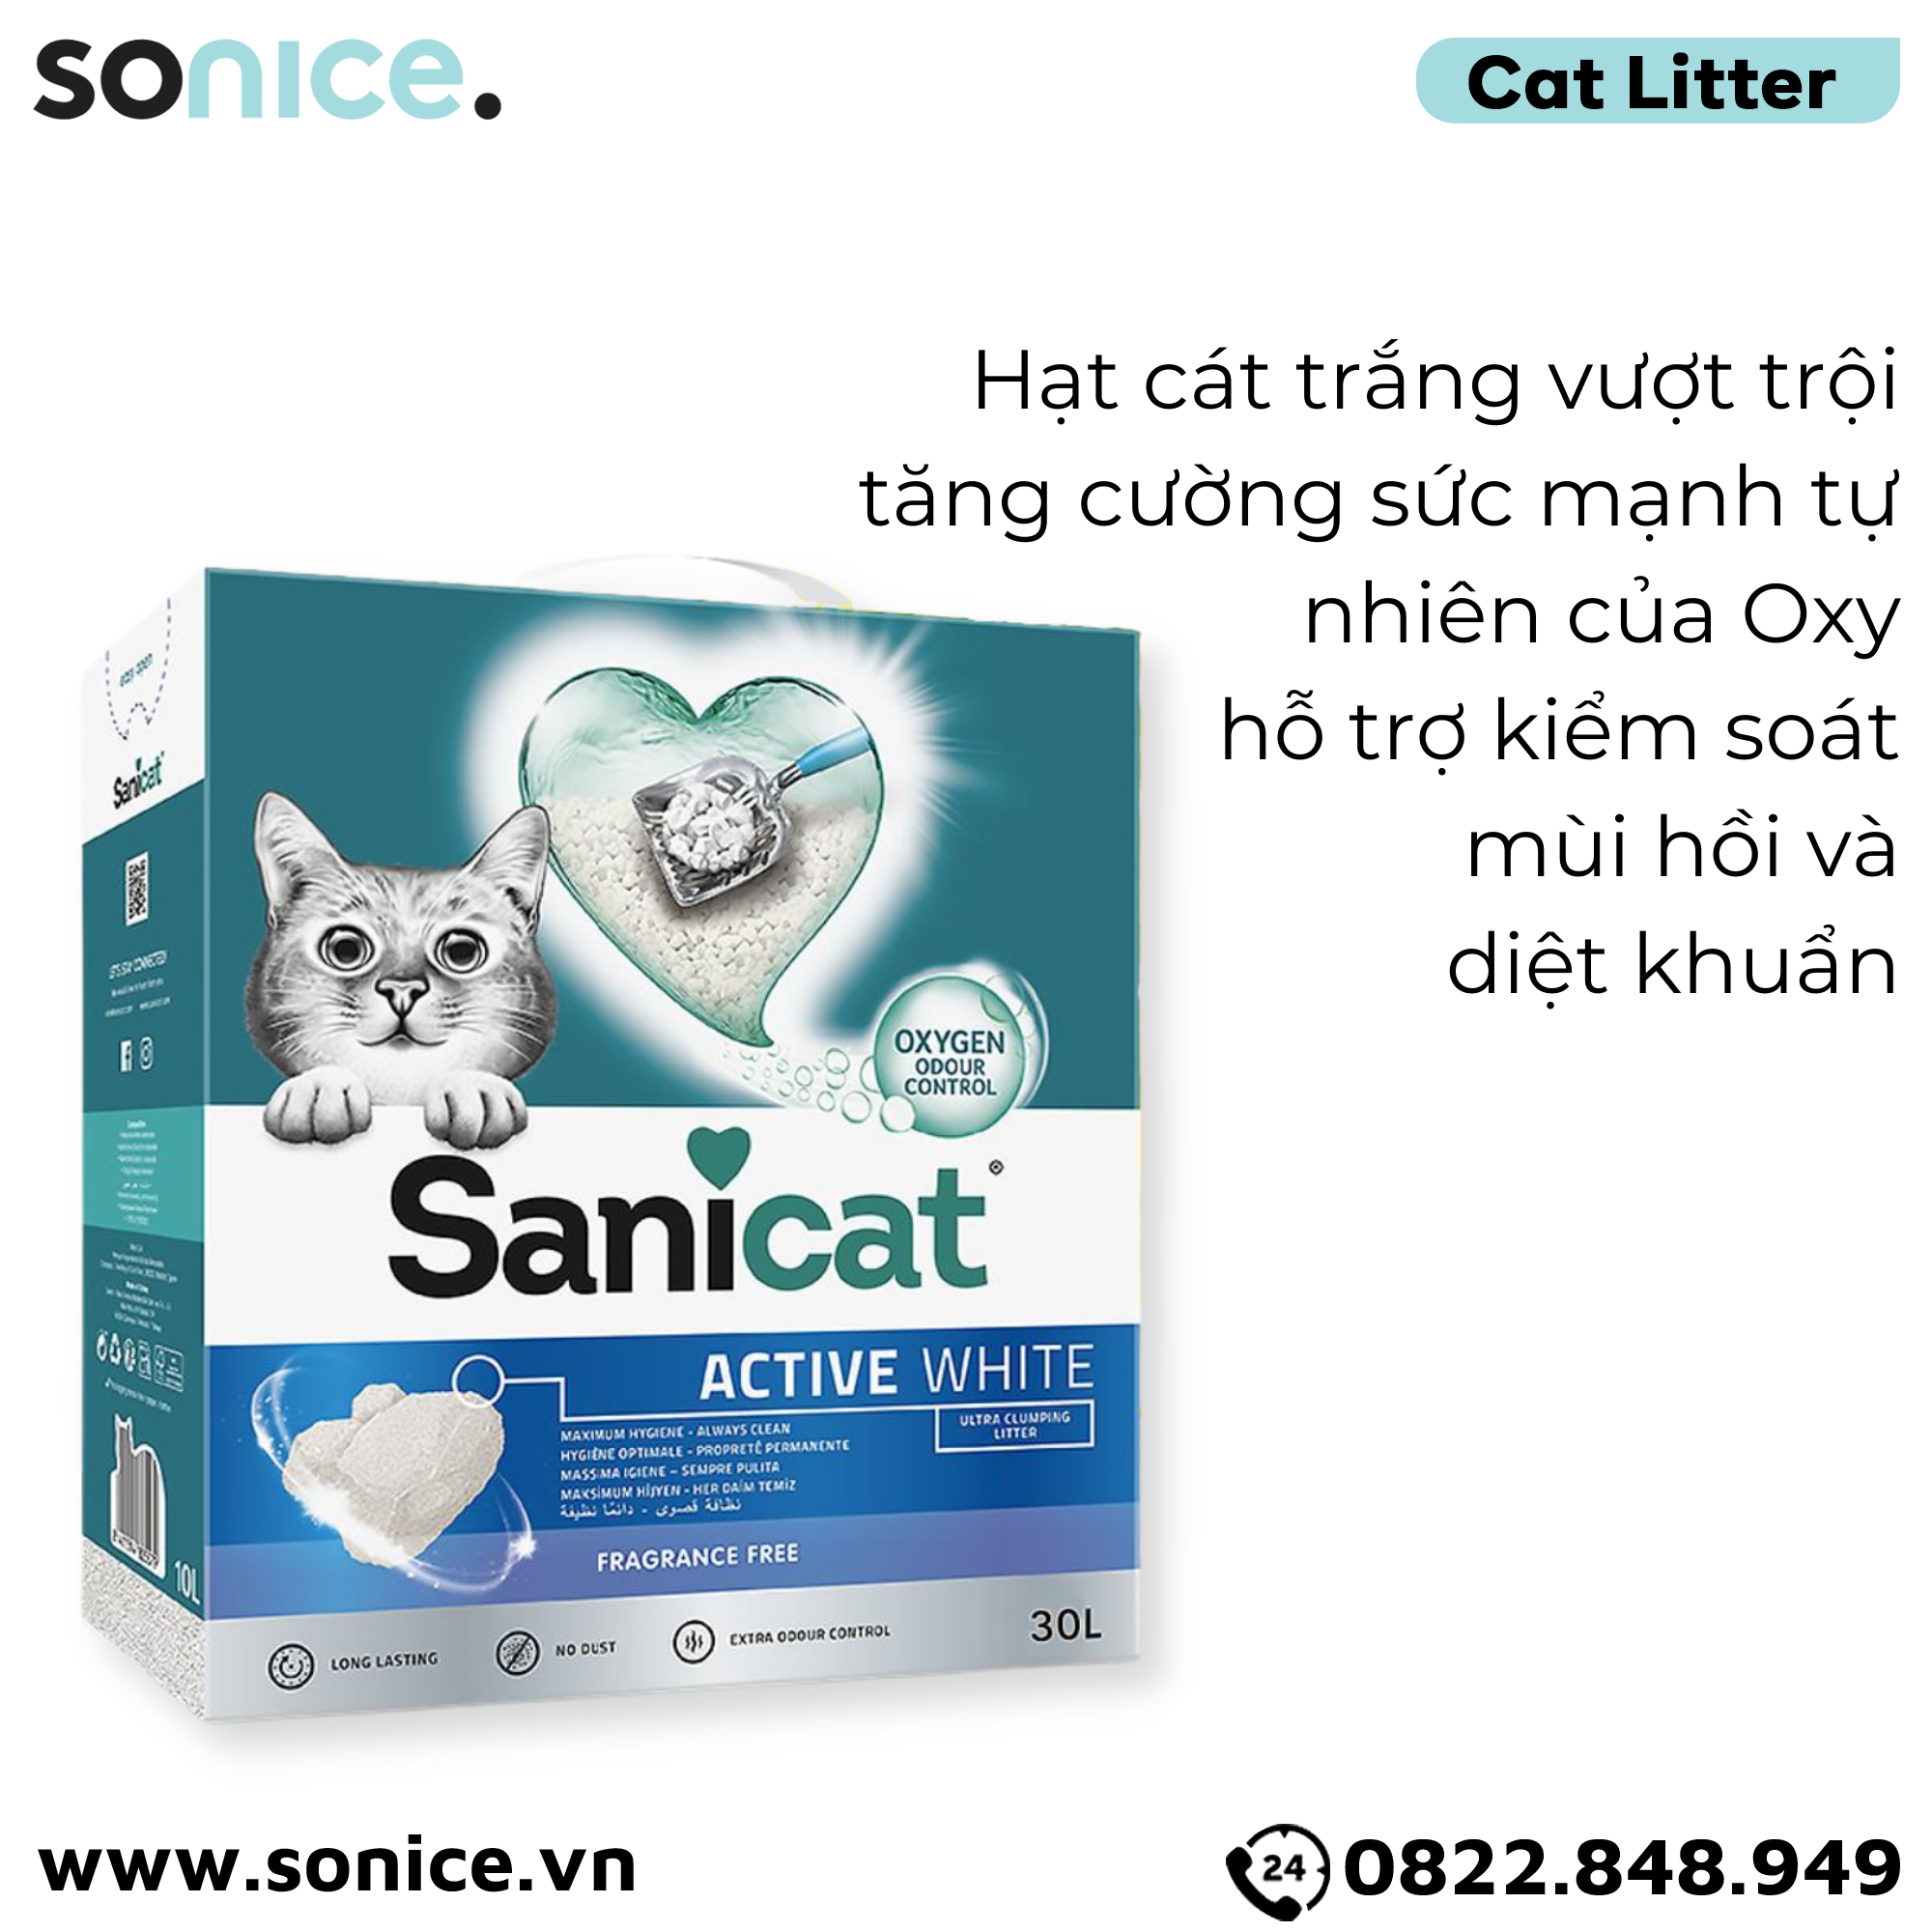  Cát vệ sinh Sanicat Clumping Active White Litter Oxygen Odour Control 30L - Kiểm soát mùi và diệt khuẩn SONICE. 